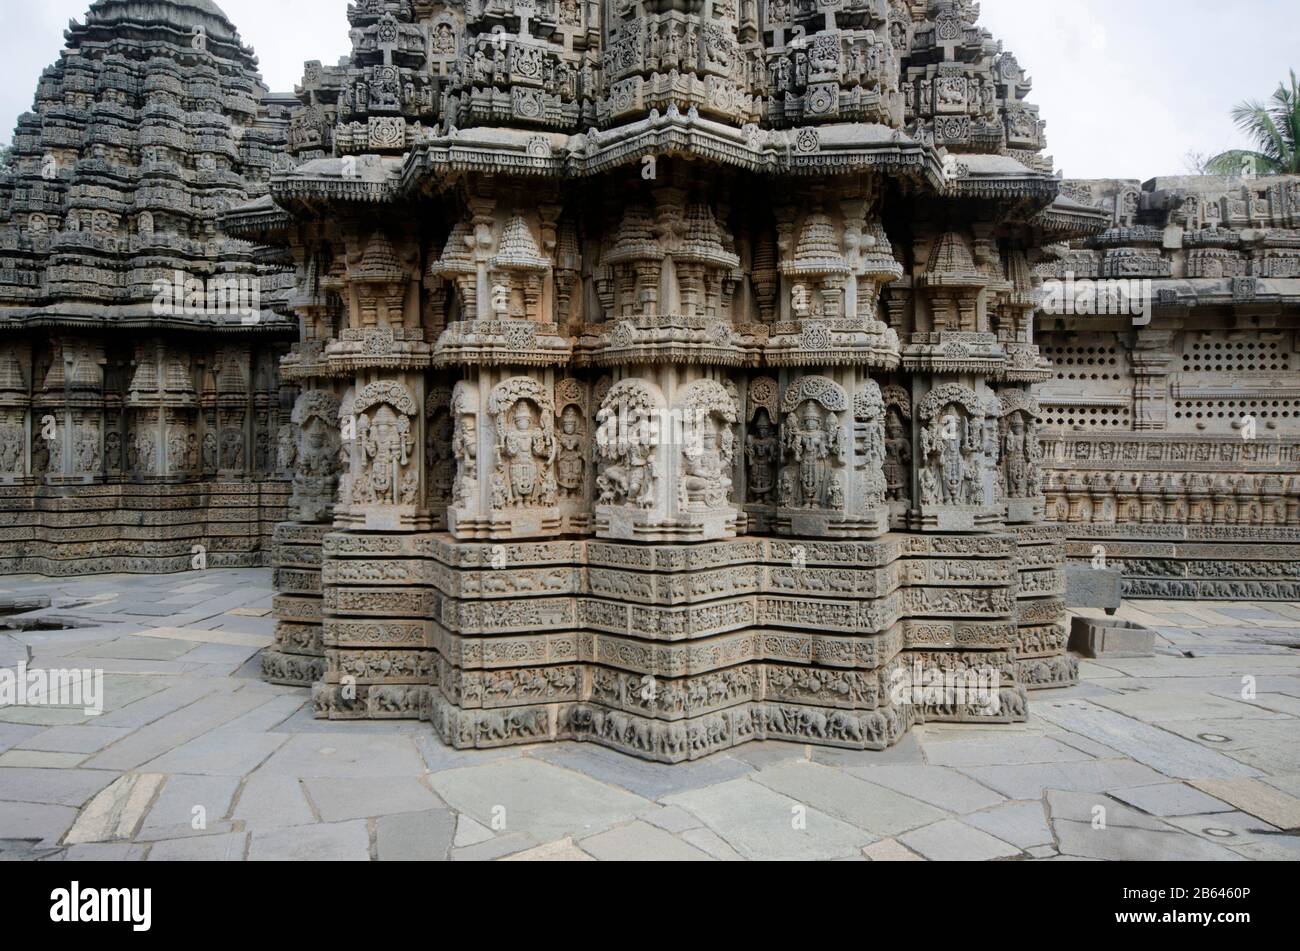 El Templo de Chennakesava, es un templo hindú de Vaishnava a orillas del río Kaveri, Somanathapura, Karnataka, India Foto de stock